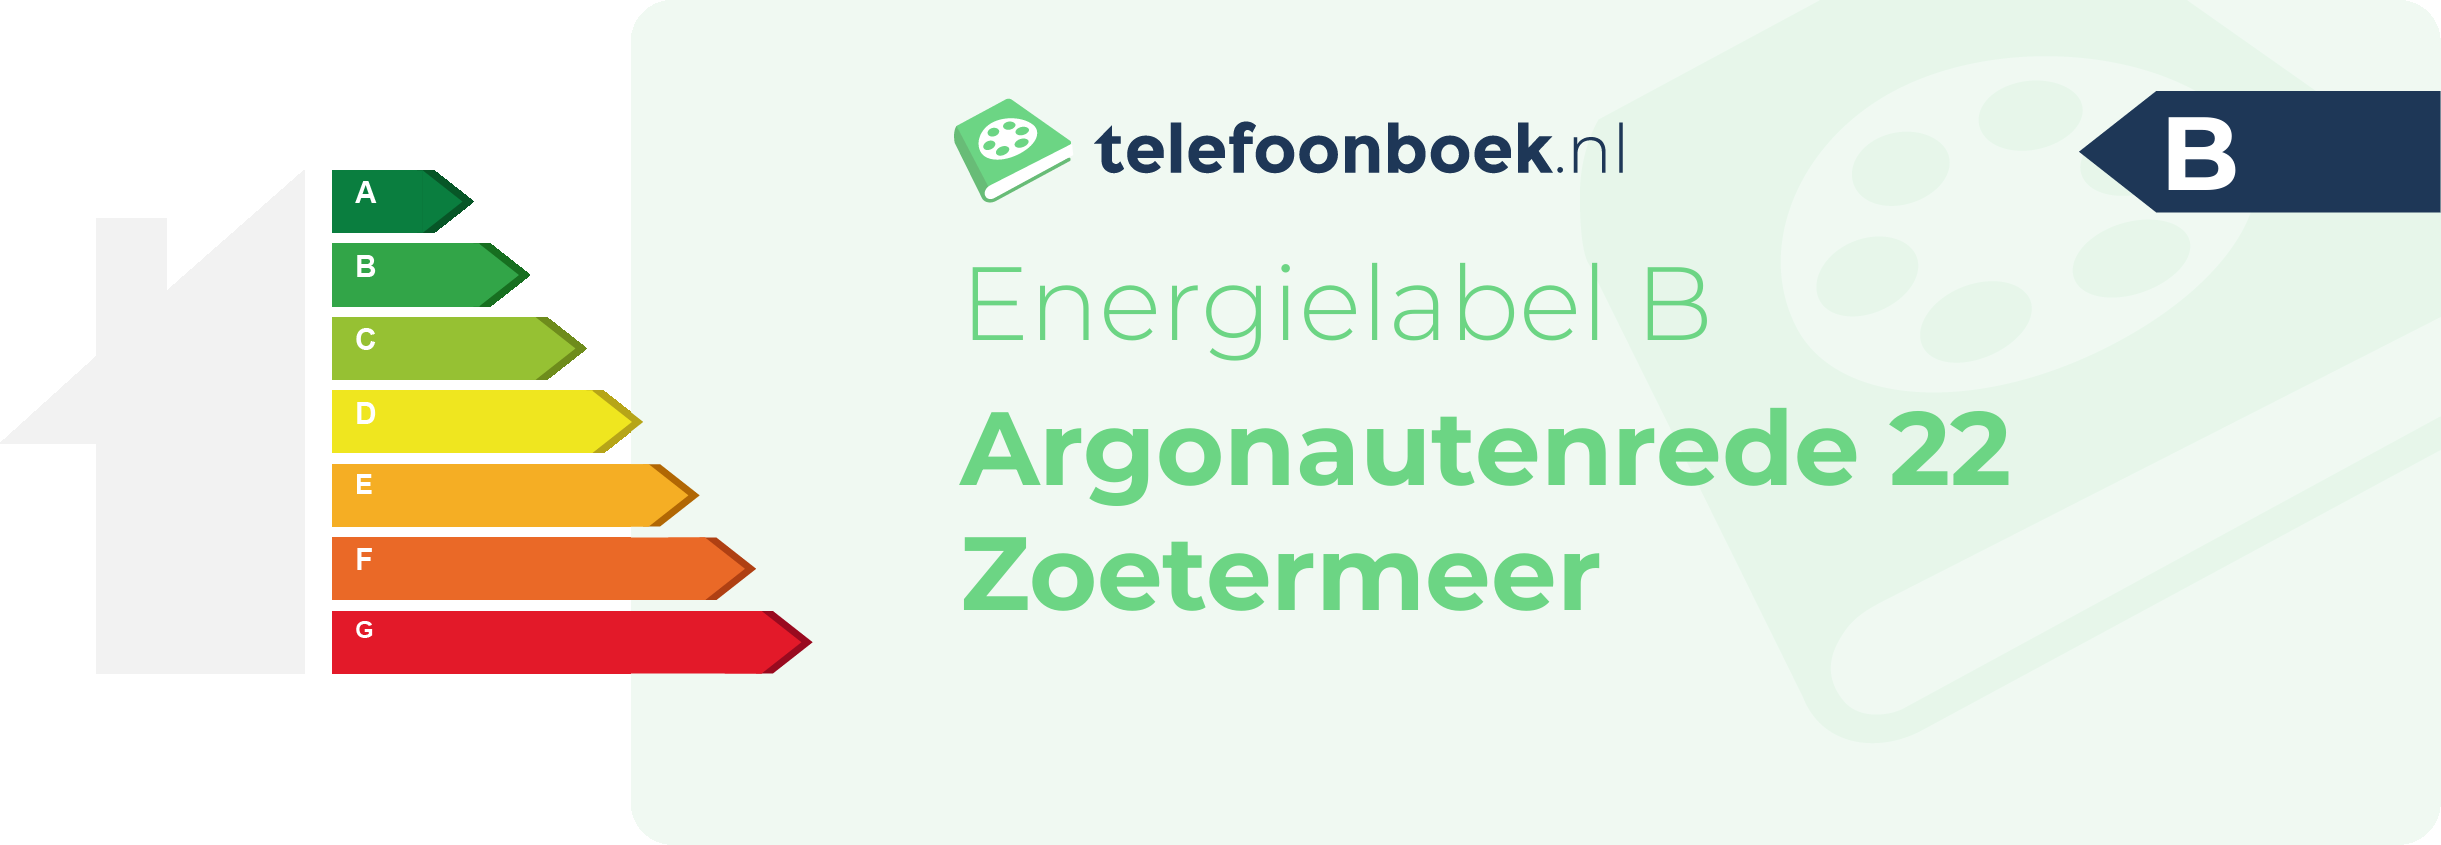 Energielabel Argonautenrede 22 Zoetermeer